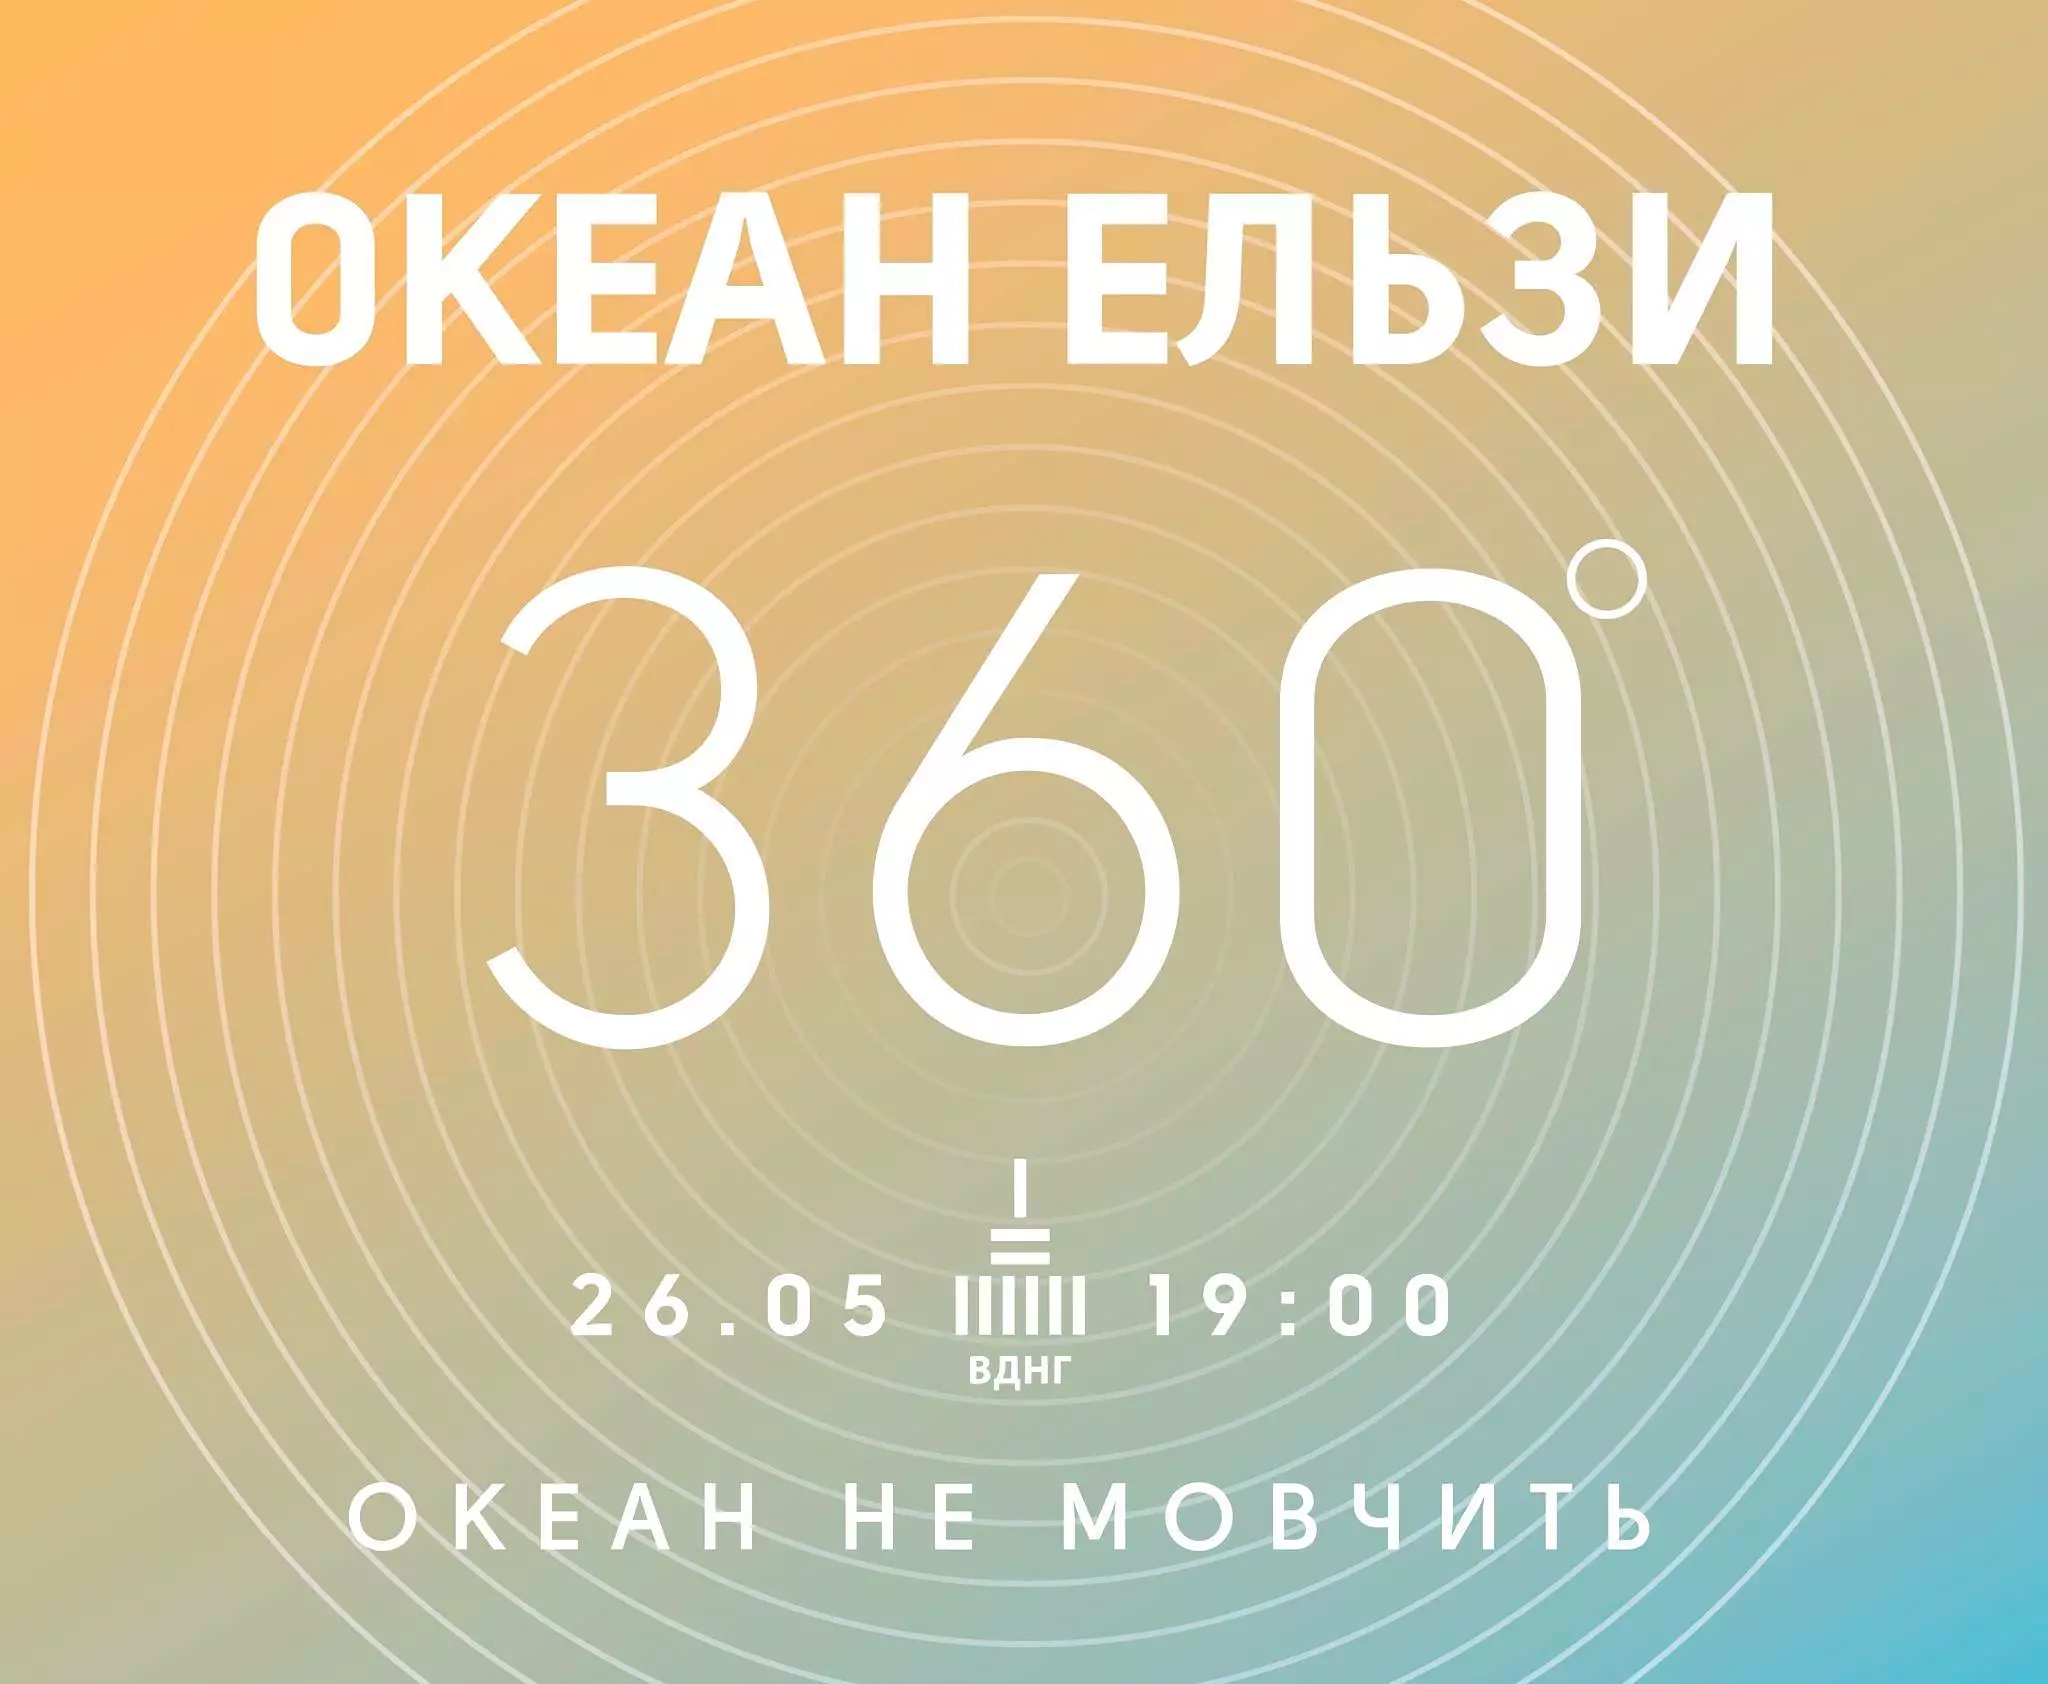 Концерт группы "Океан Ельзи" состоится в Киеве на День города